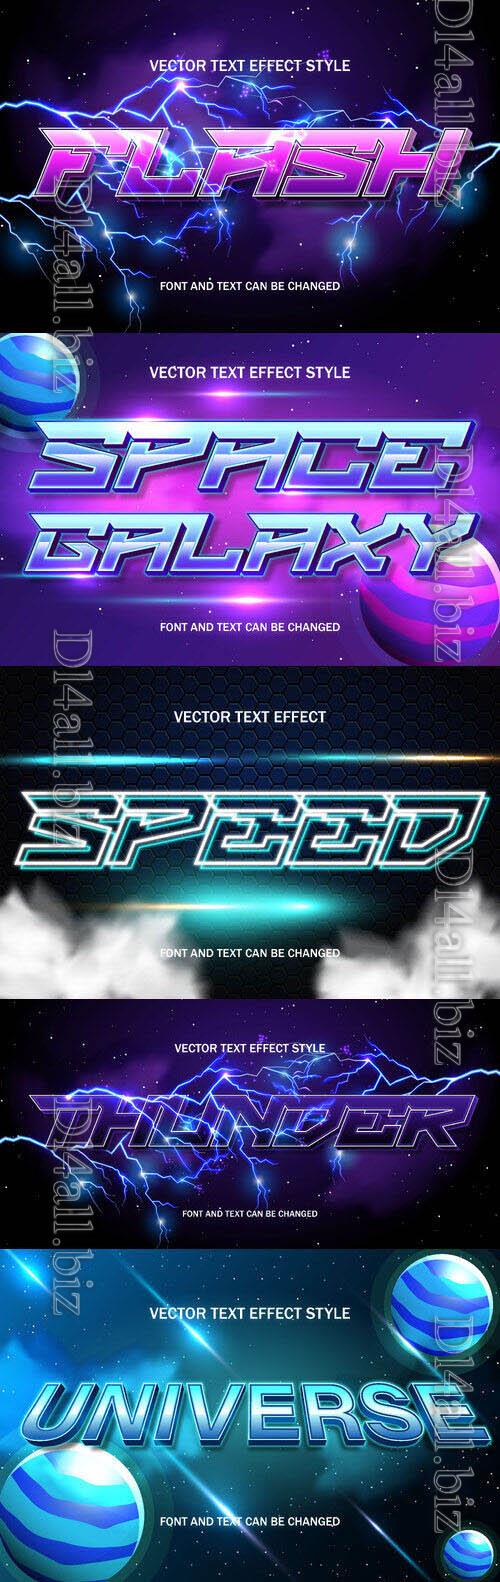 Vector 3d text editable, text effect font design  set vol 73